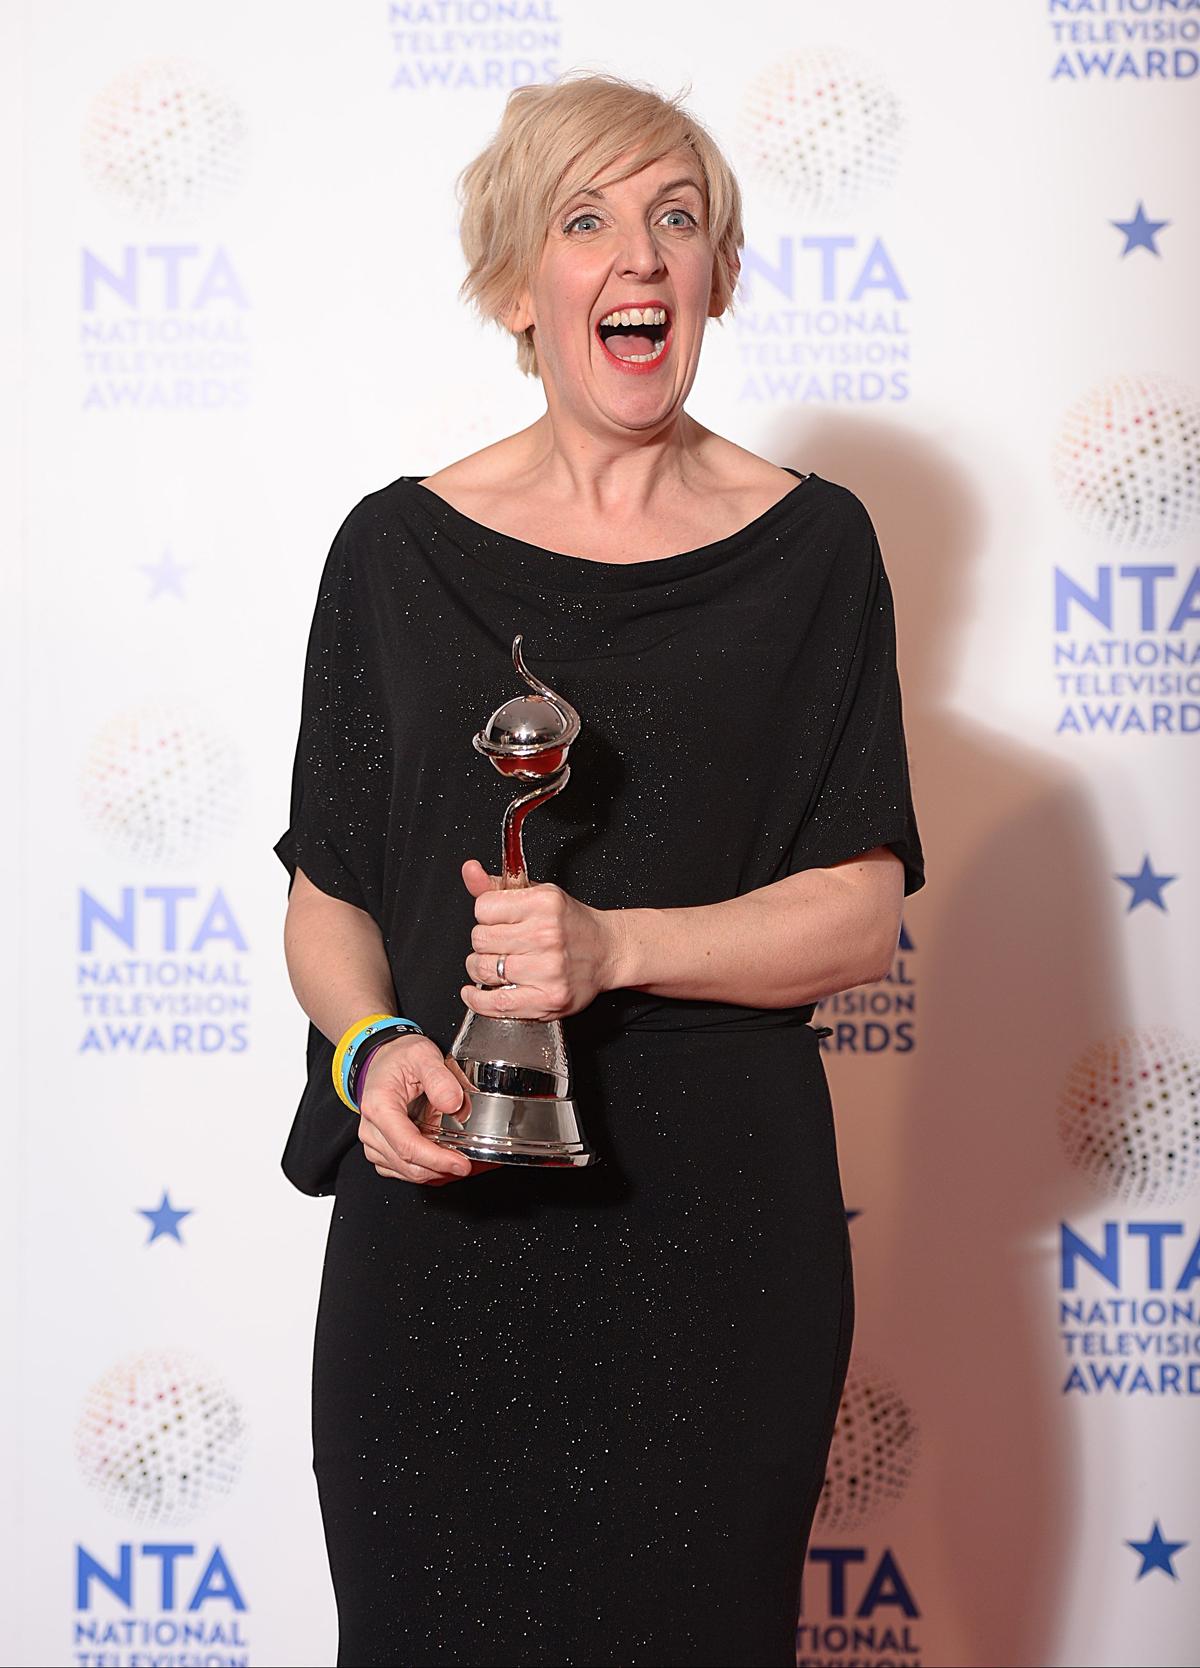 2014 National Television Awards at the O2 Arena, London.